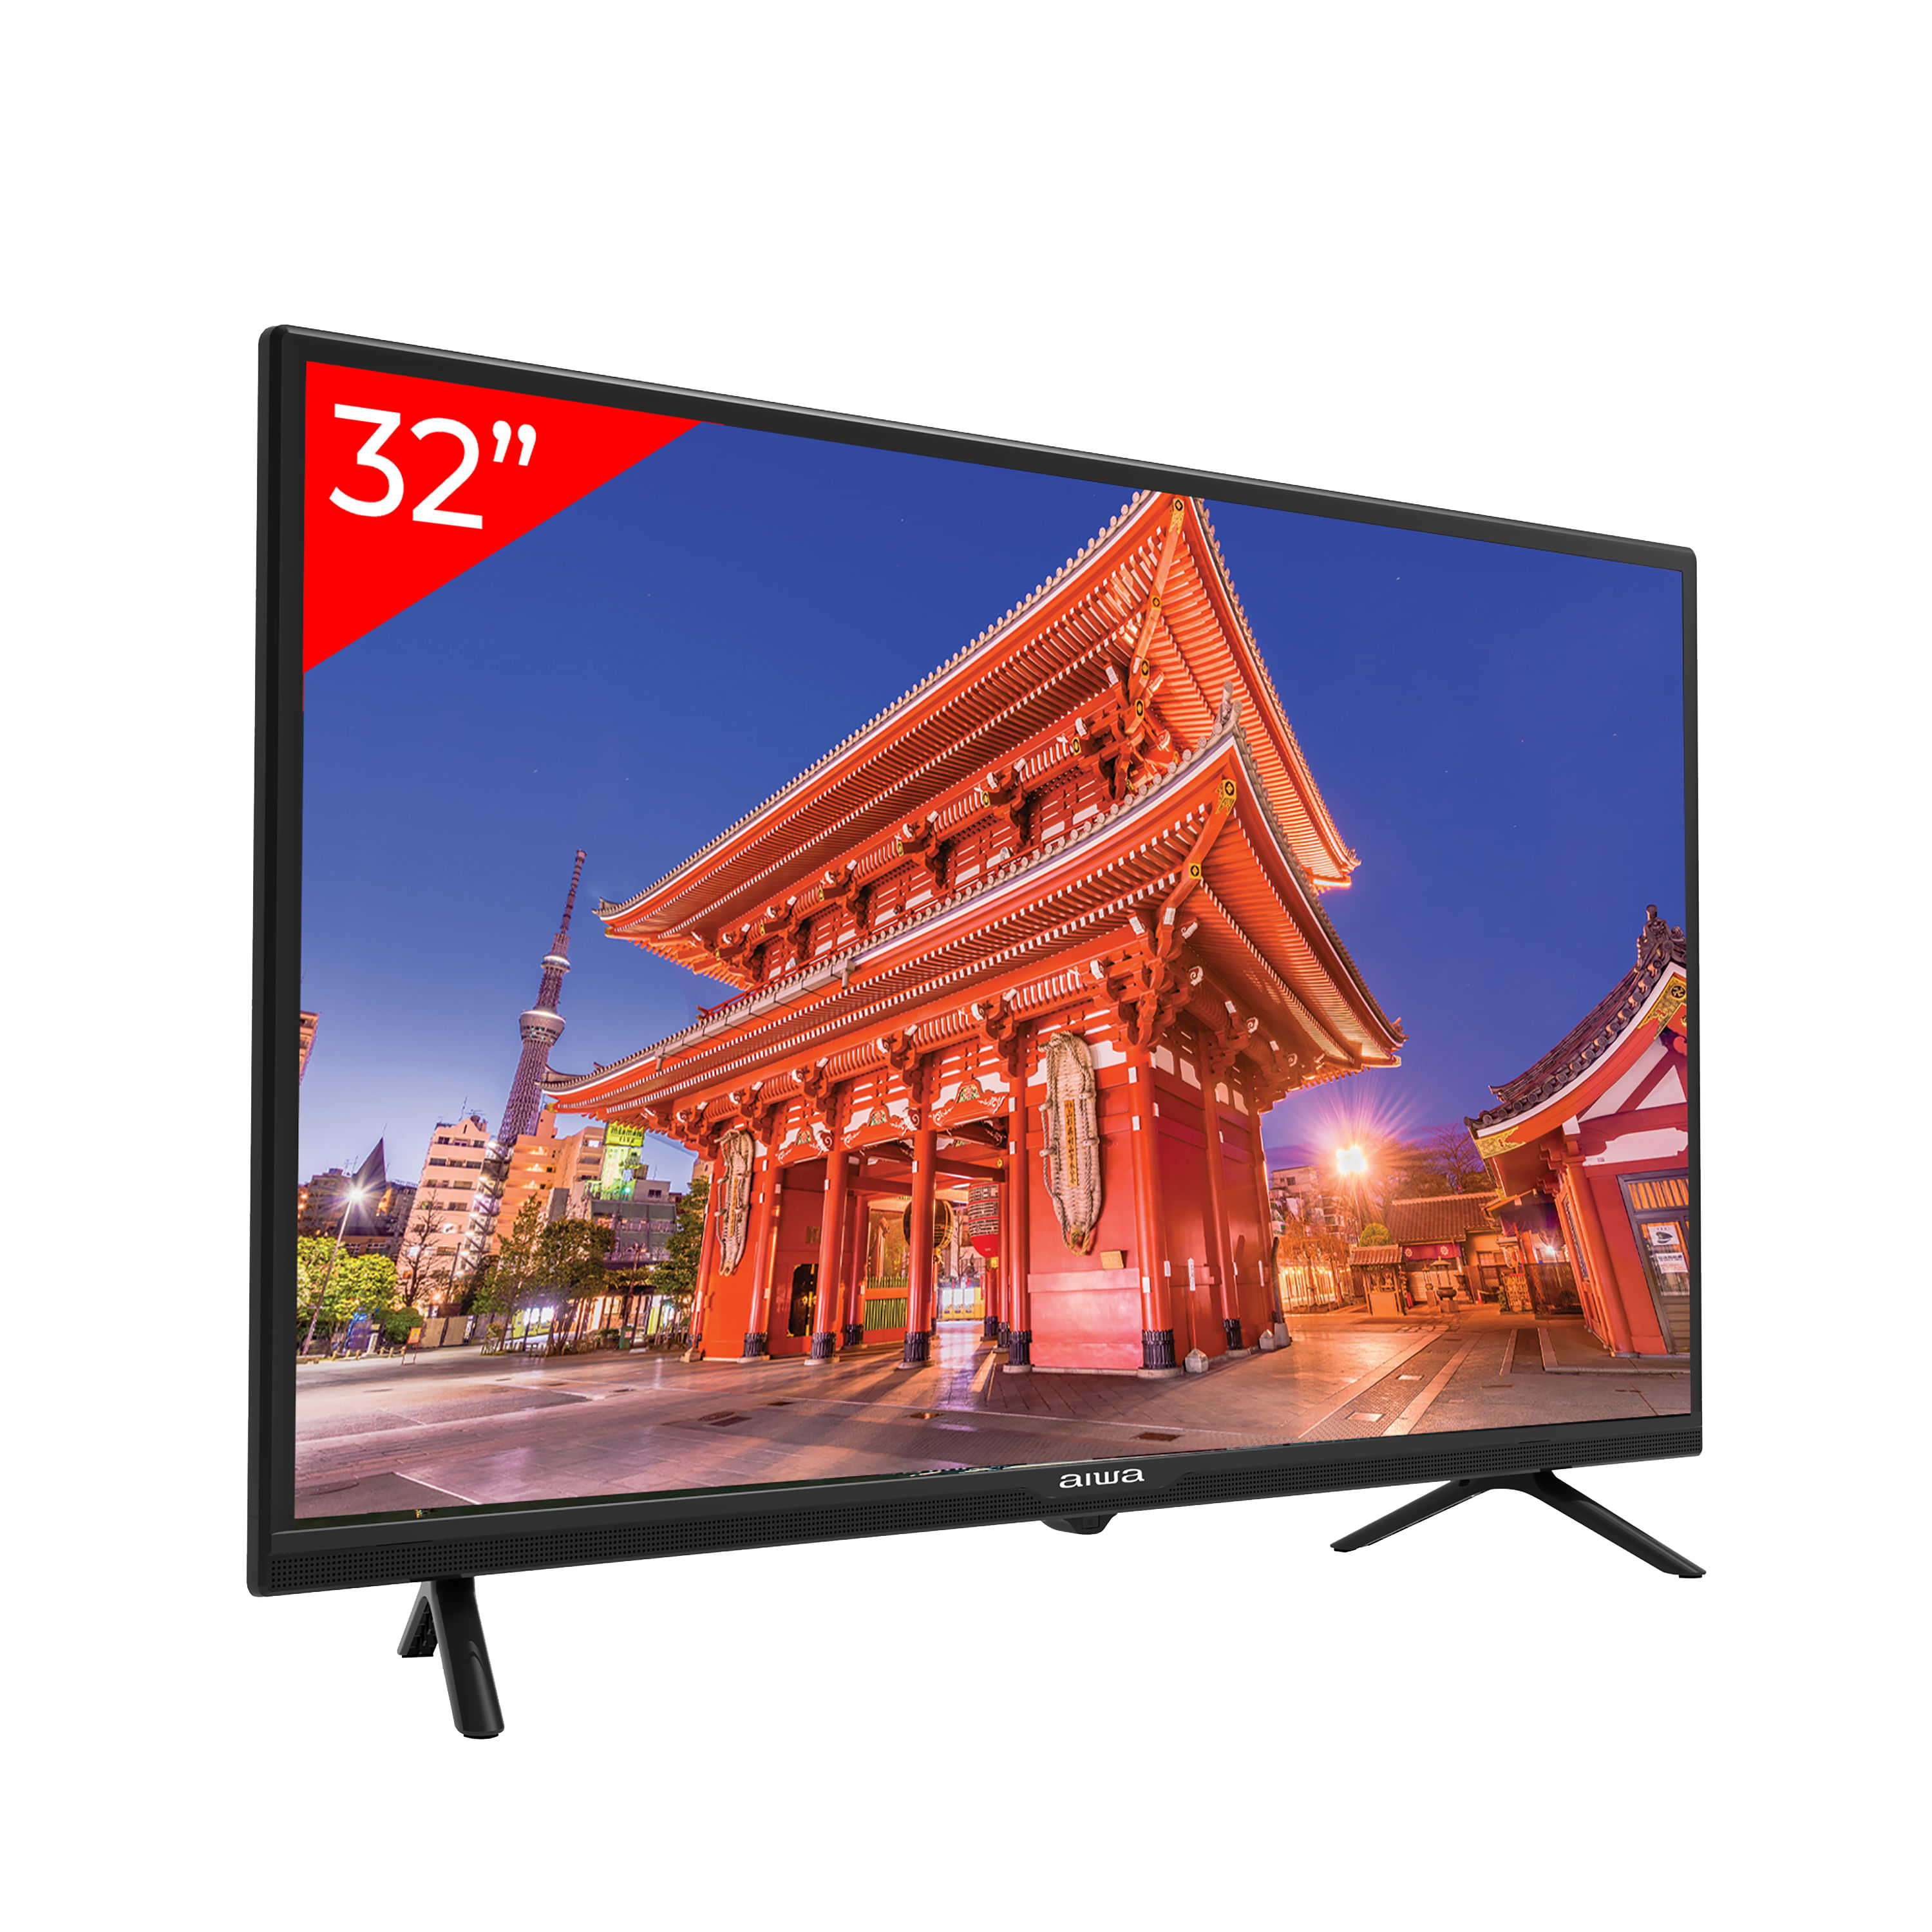 Compre Smart Tv Led De Pantalla Plana De 32 Pulgadas A Precio Barato De  Fábrica y Smart Tv de China por 40 USD